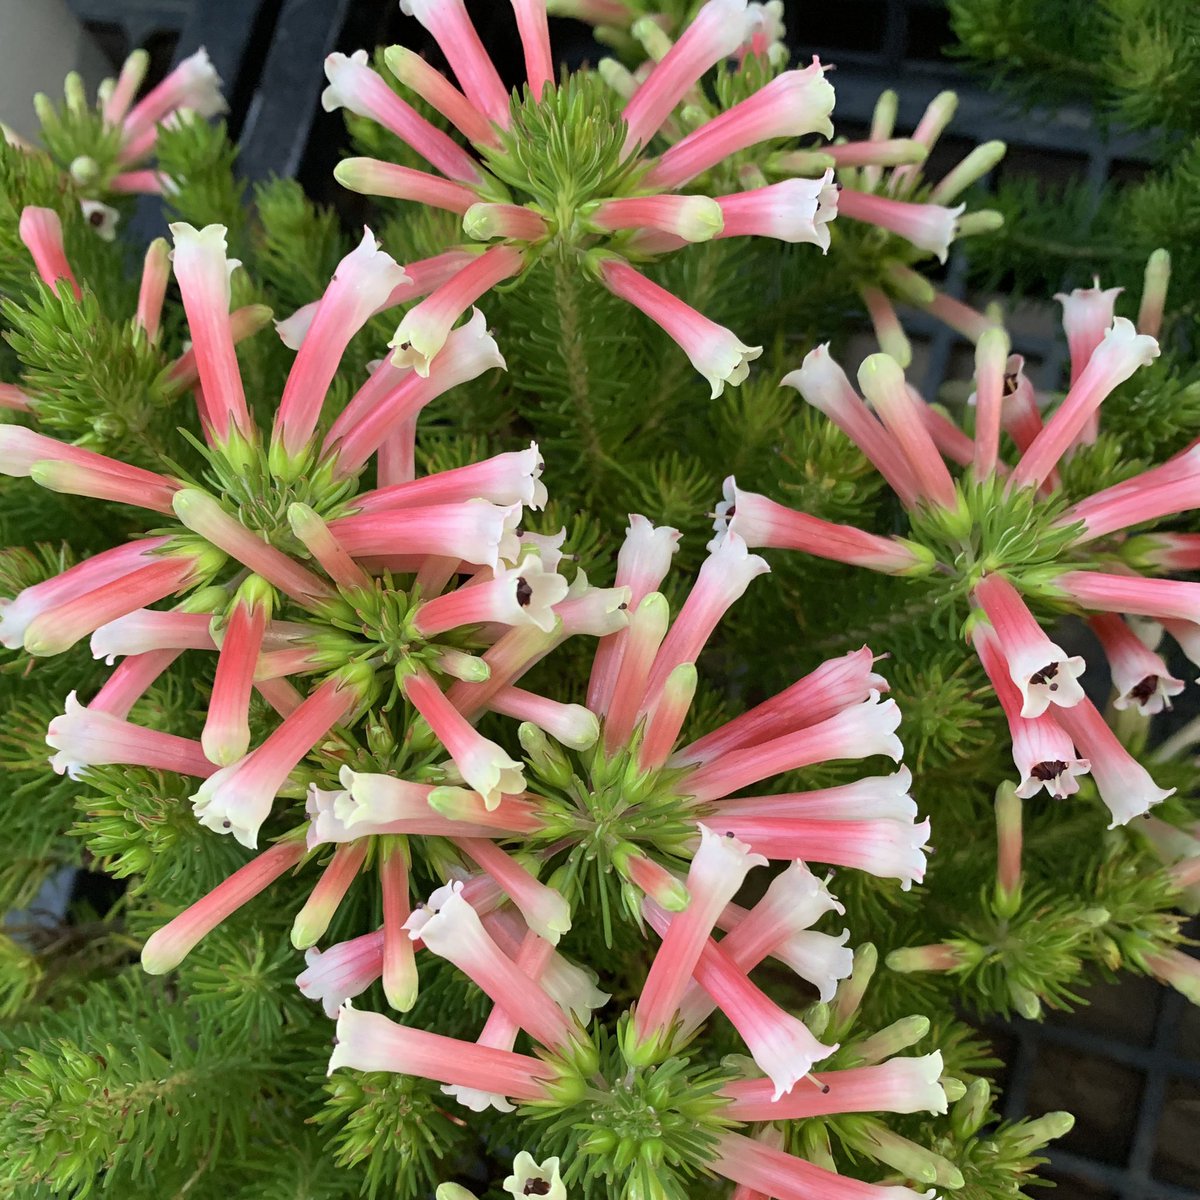 おはよう御座います(*´▽｀)ﾉﾉ 🌸🌸🌸花の便り🌸🌸🌸 エリカは南アフリカと一部ヨーロッパを中心に自生する常緑性の花木です。日本にも鉢花や切り花で数十種類が流通しています